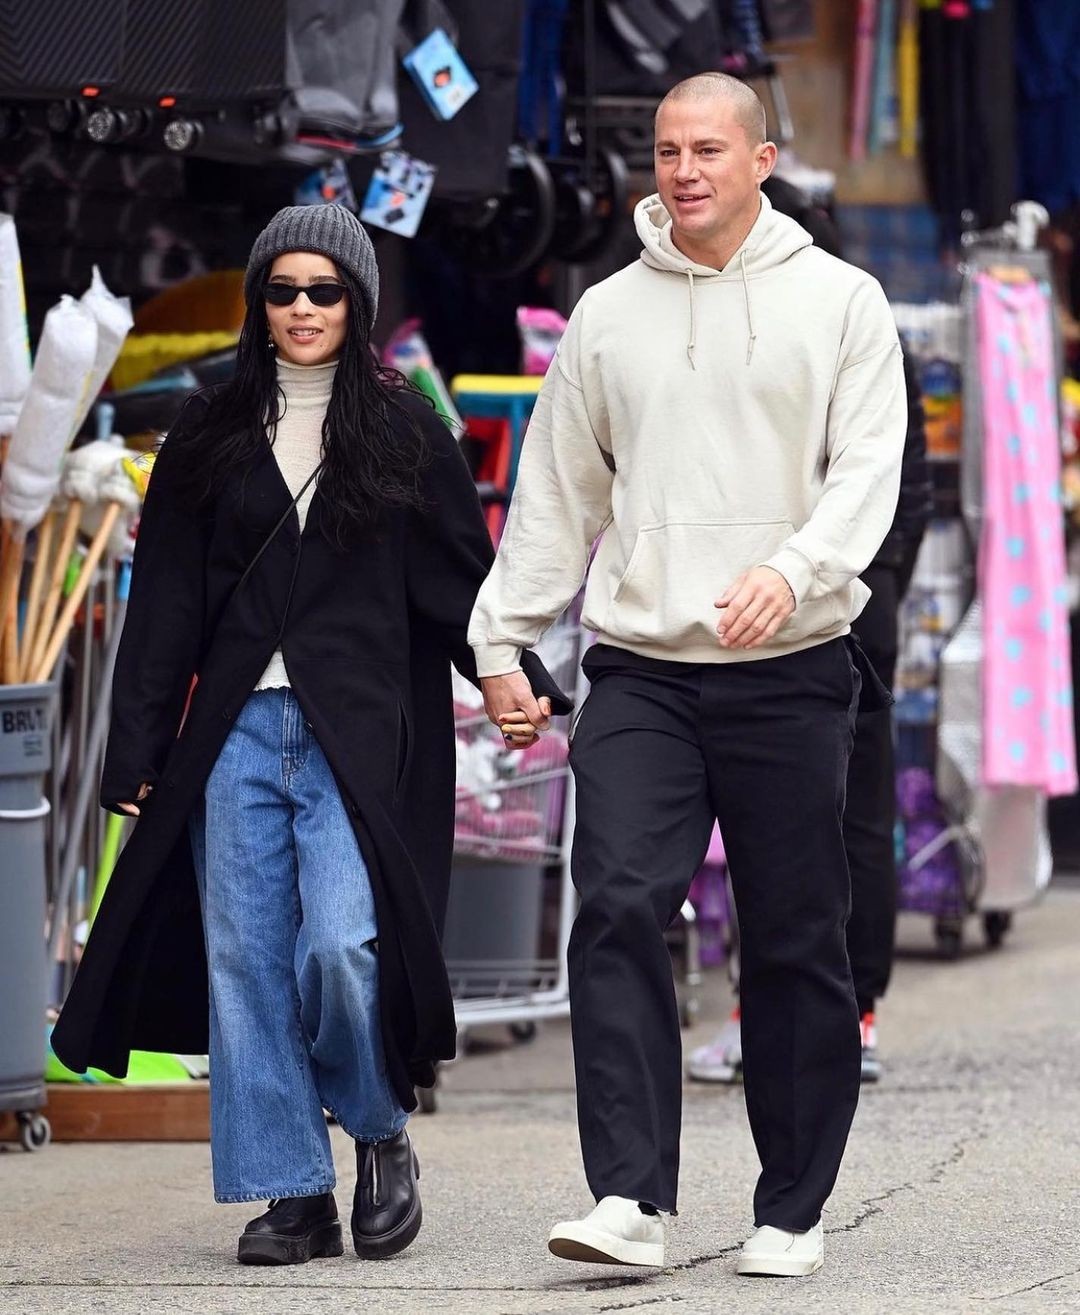 Zoë e Channing caminham na rua com looks minimalistas  (Foto: Reprodução Instagram)